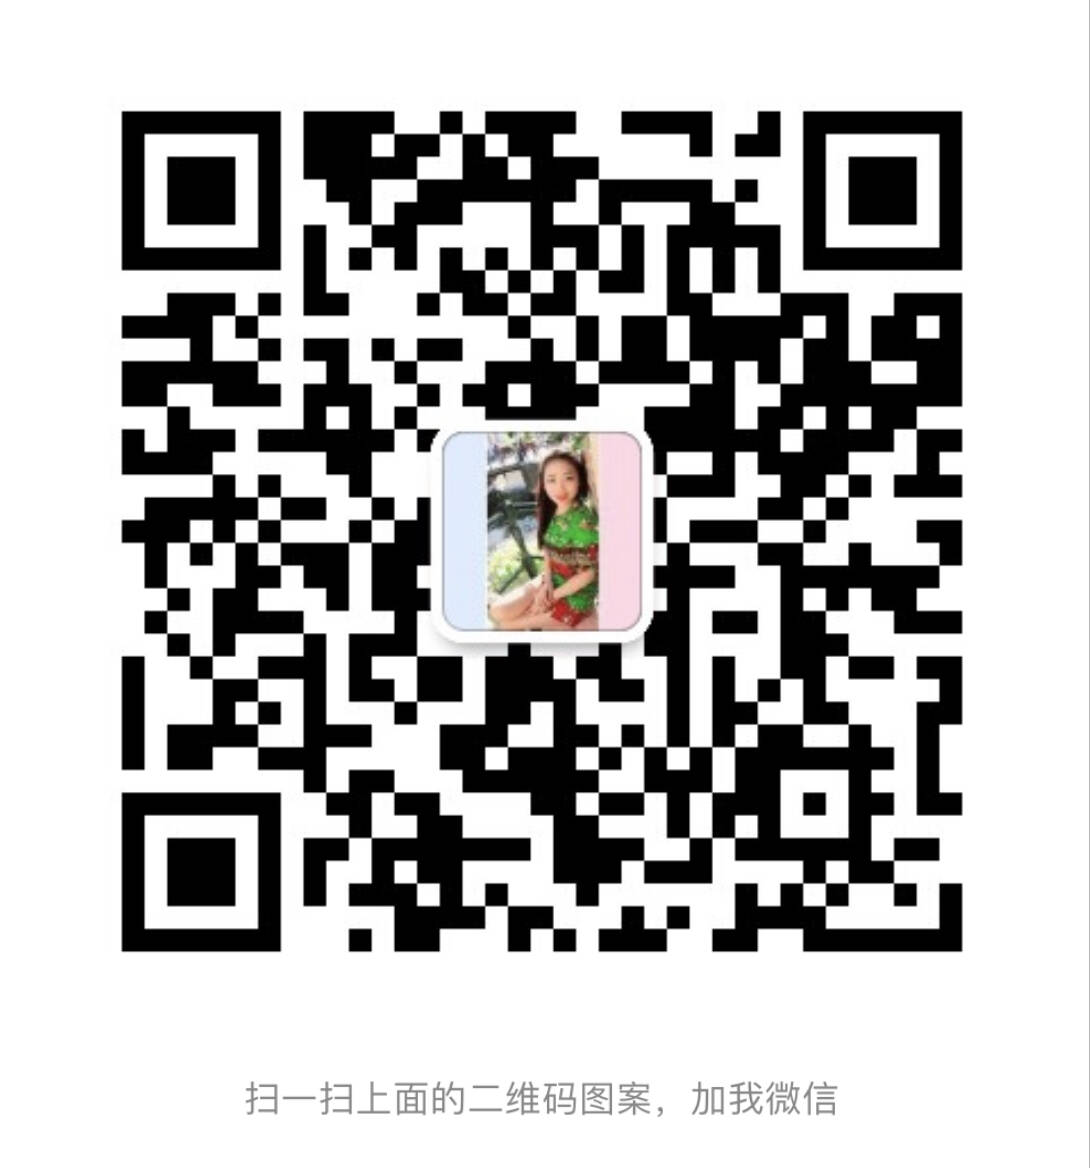 WeChat Image_20181017164025.jpg